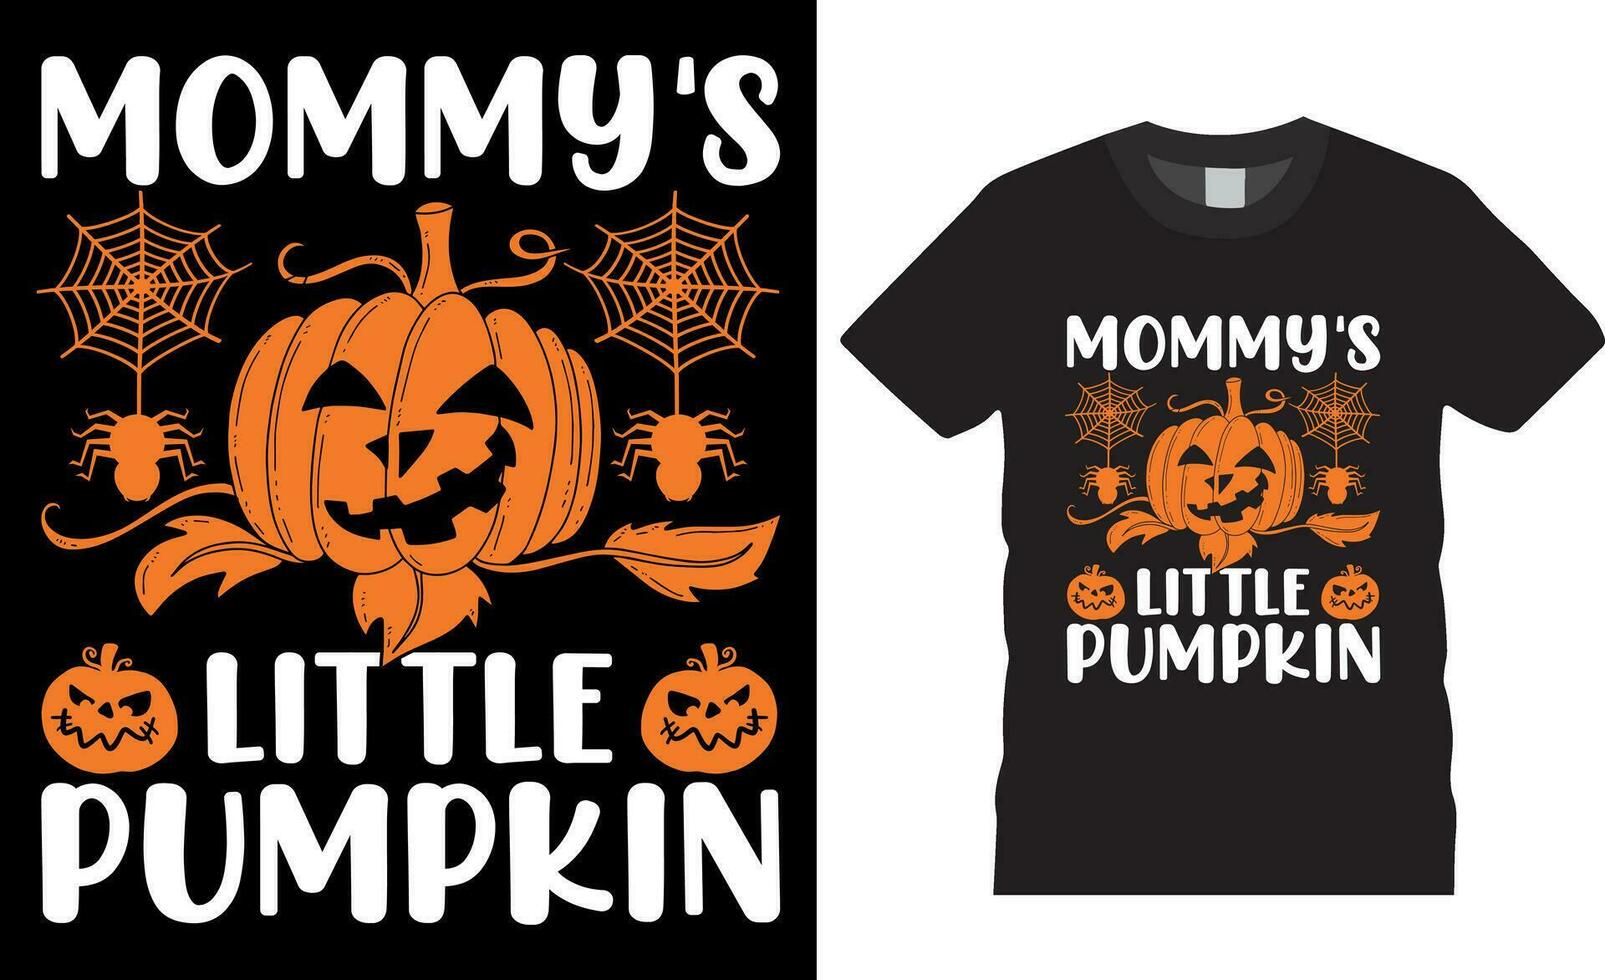 Mommy's Little Pumpkin Funny Halloween T-Shirt design vector template